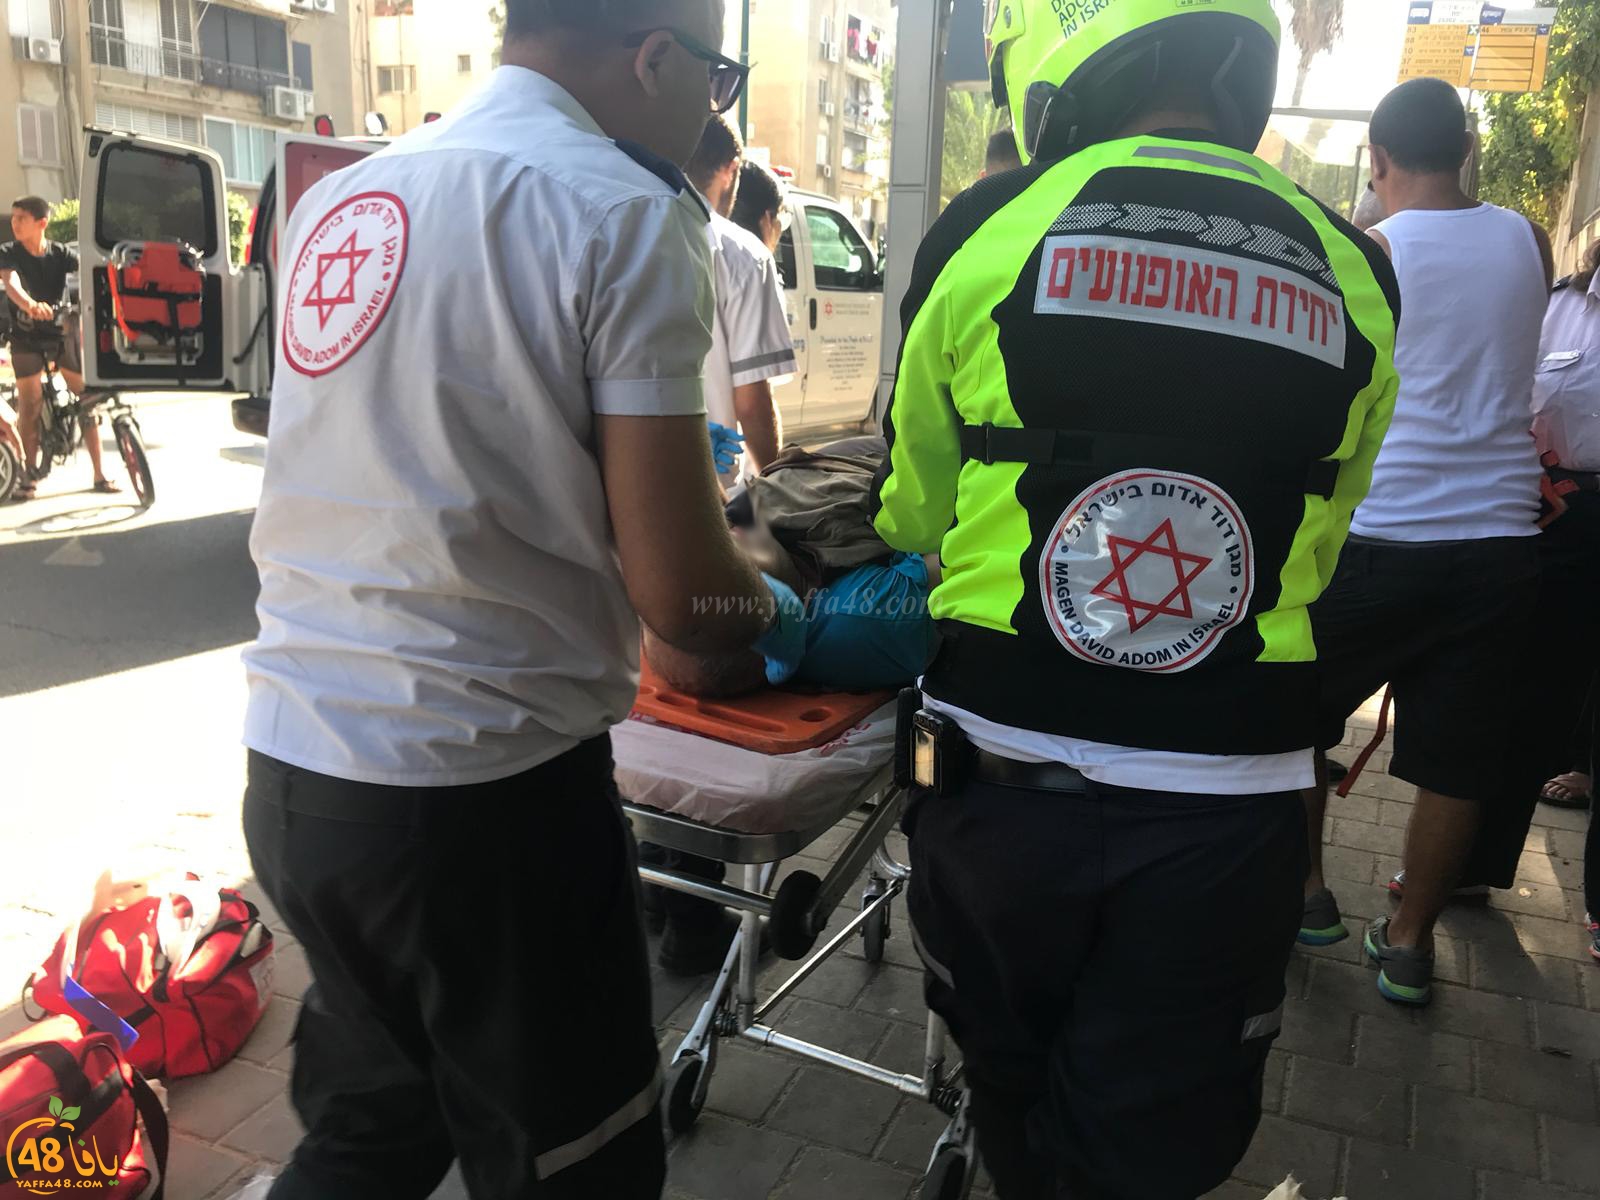  يافا: اصابة متوسطة لشخصين بحادث دهس في شارع ييفت الرئيس 